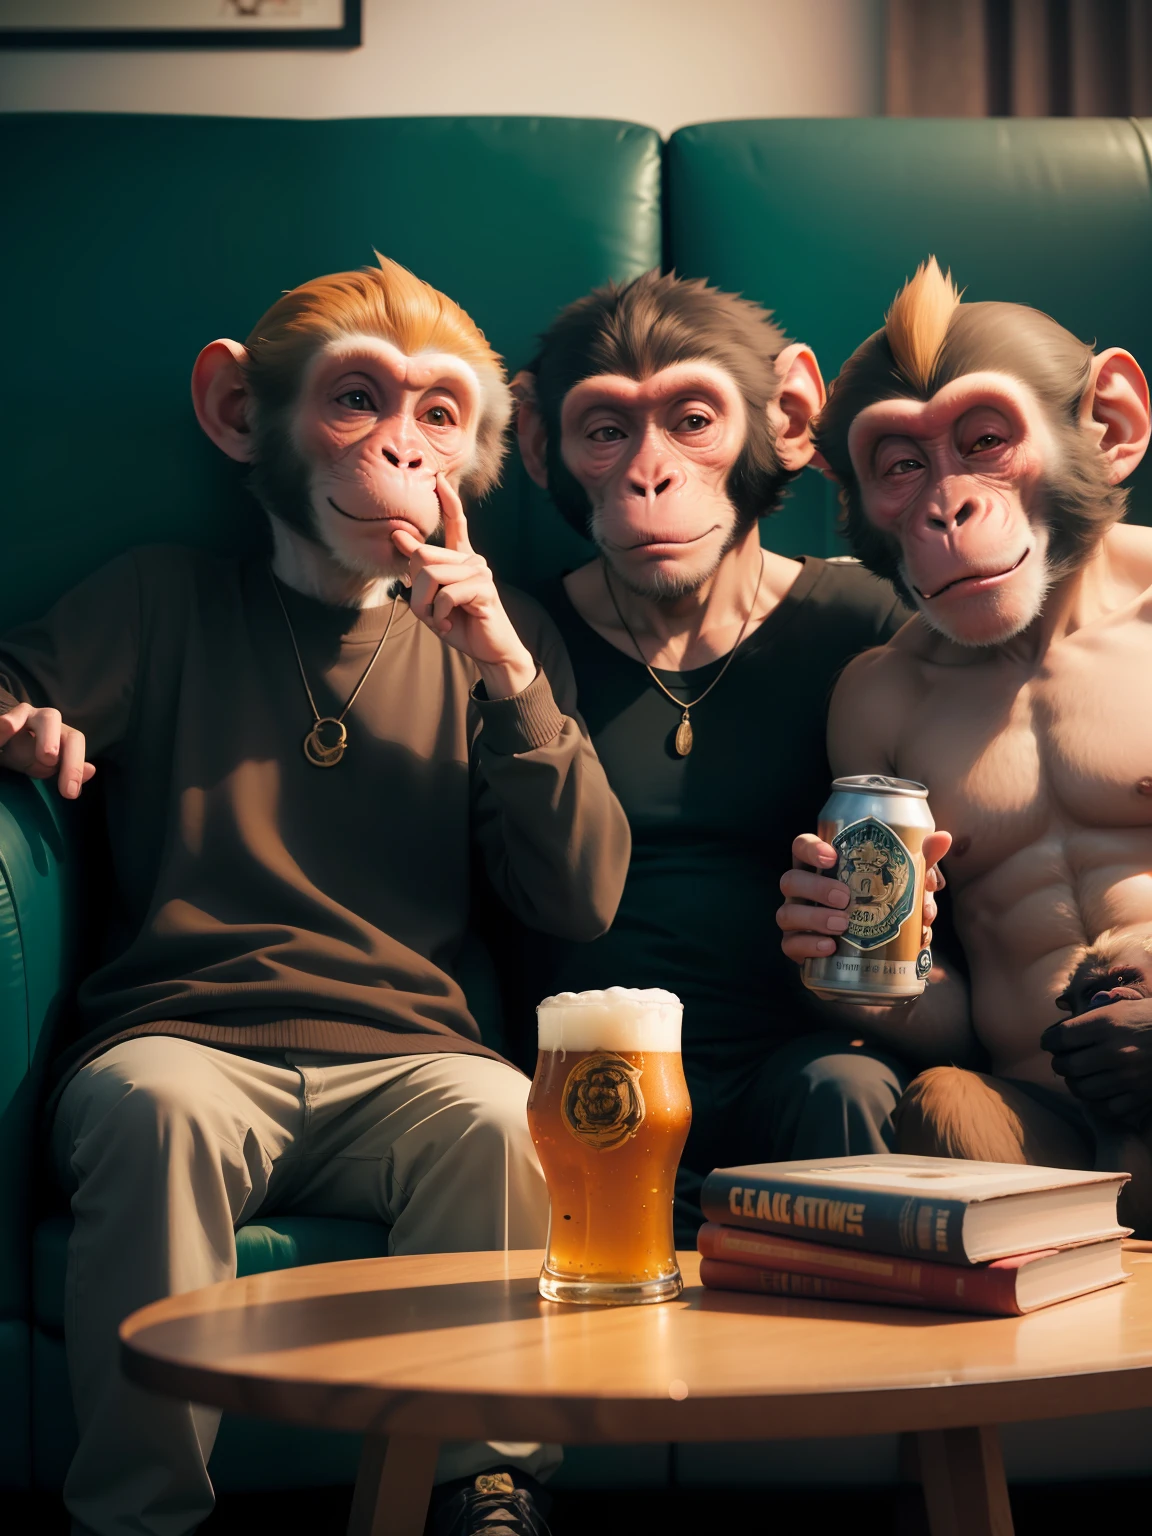 ソファに座っている二匹の猿, 1匹の猿が缶ビールを飲んでおり、もう1匹の猿がカメラに向かって中指を立てている